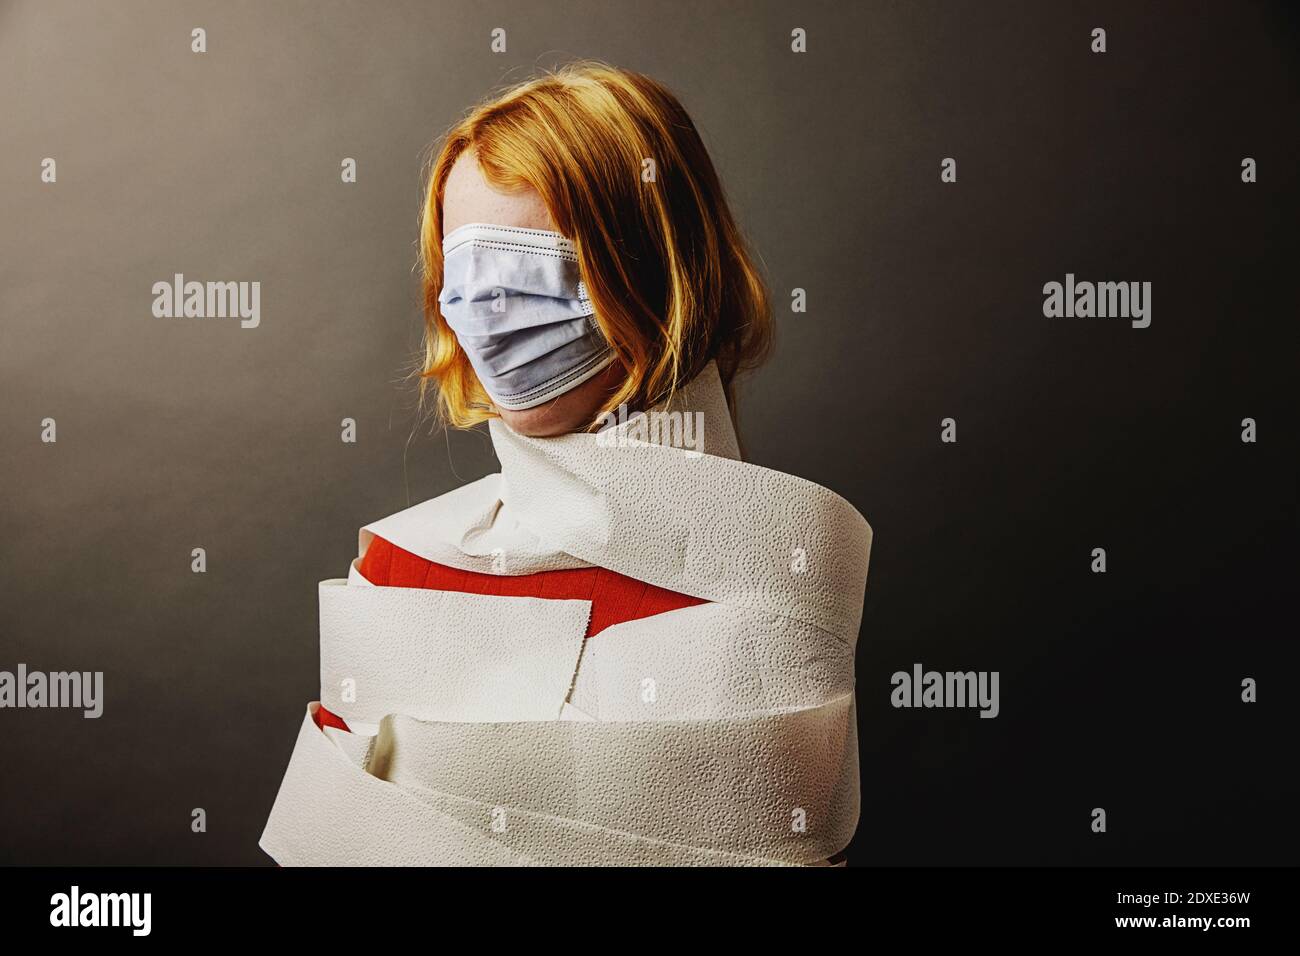 Ragazza adolescente avvolta in carta igienica e faccia coperta con maschera protettiva contro sfondo grigio Foto Stock